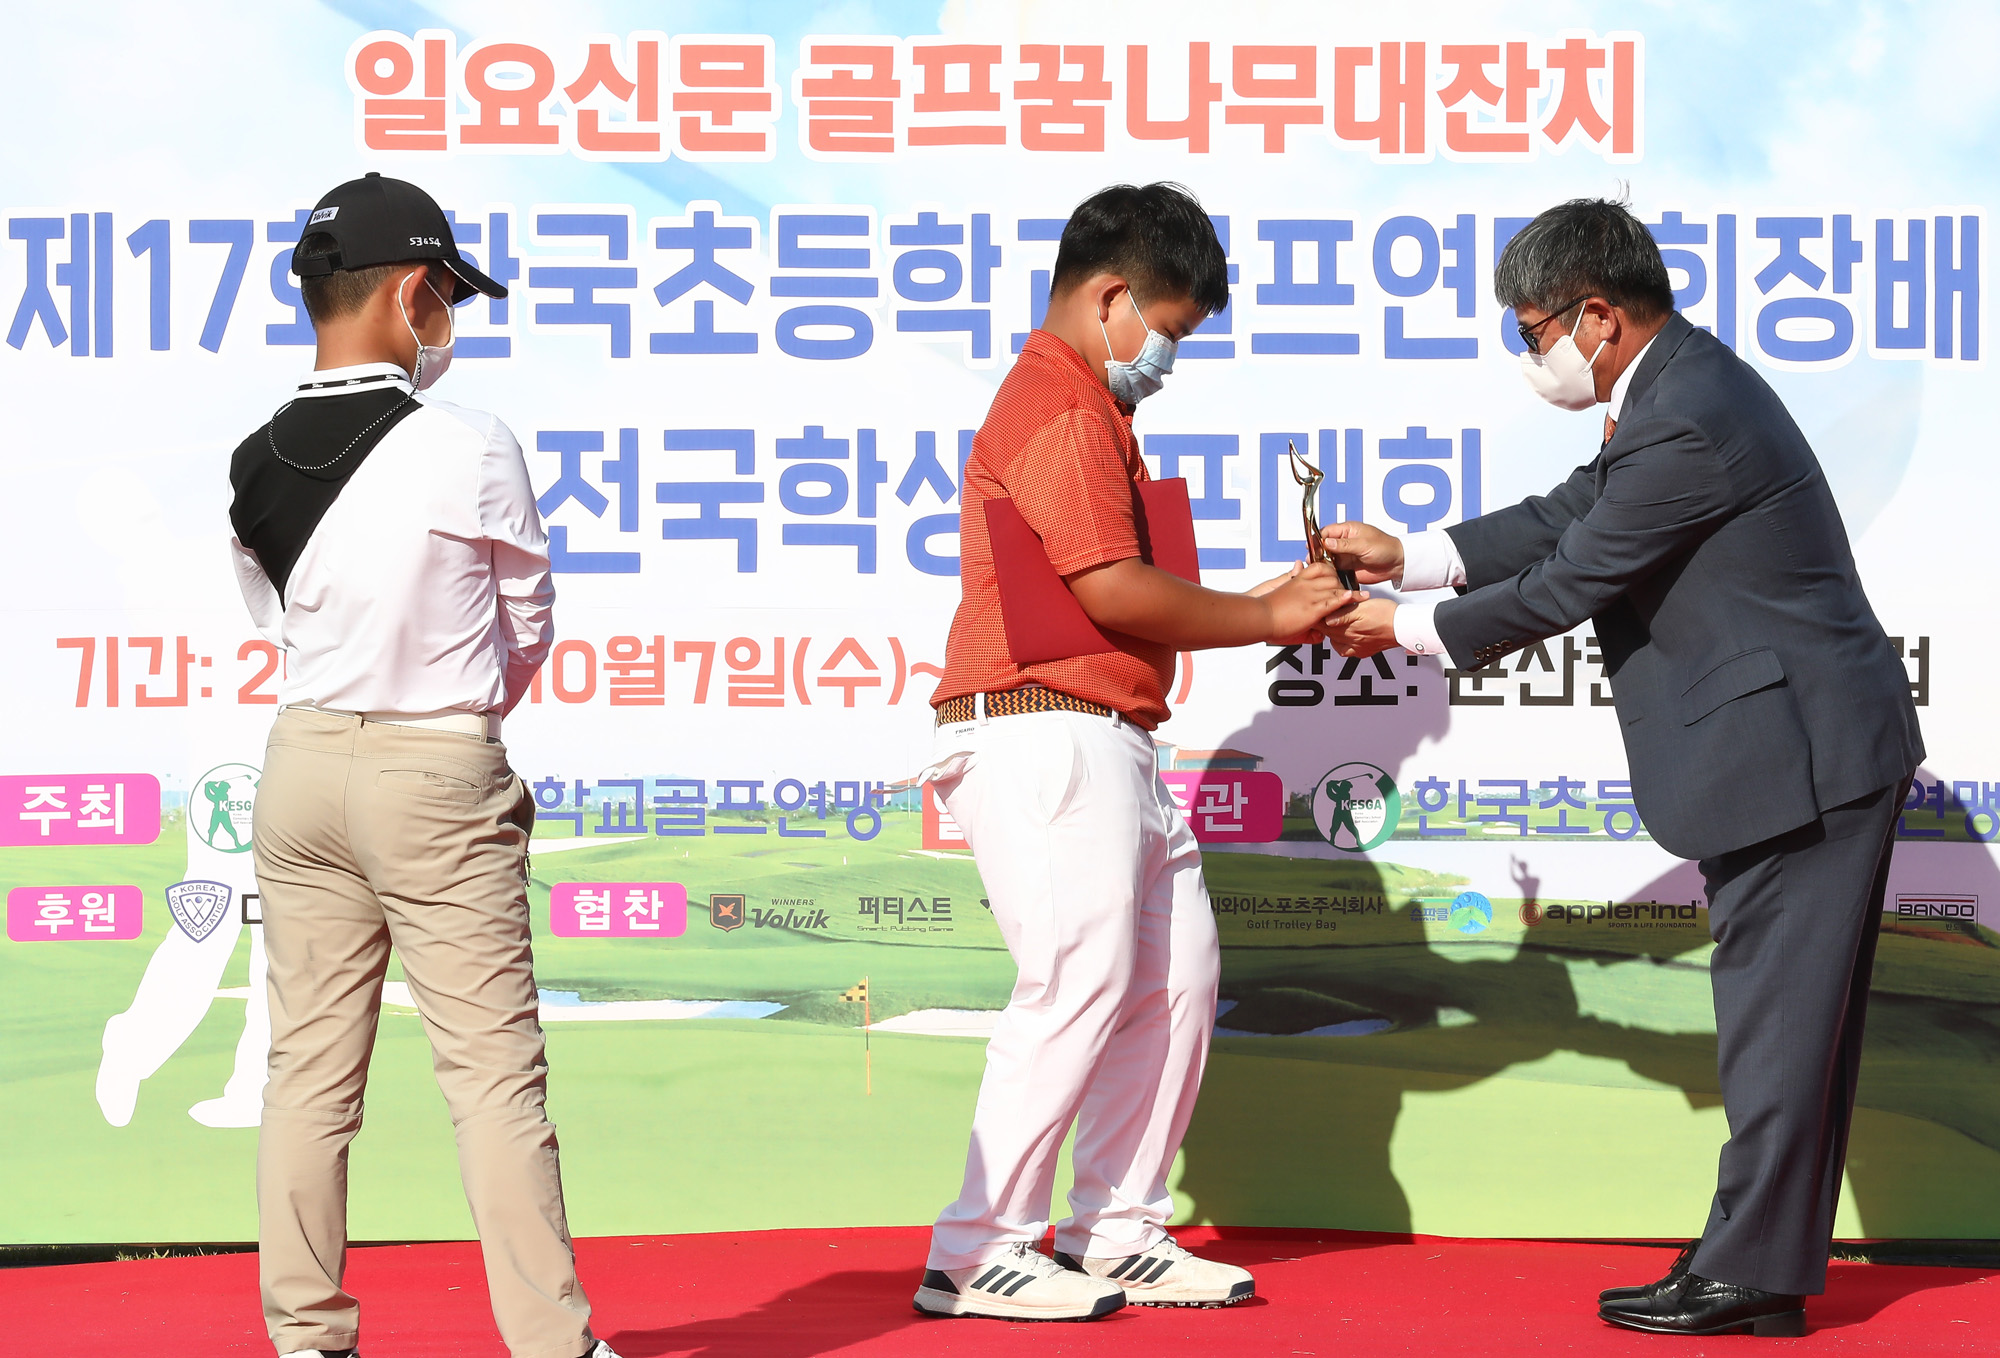 스포츠 골프 일요신문 한국초등학교 골프연맹 